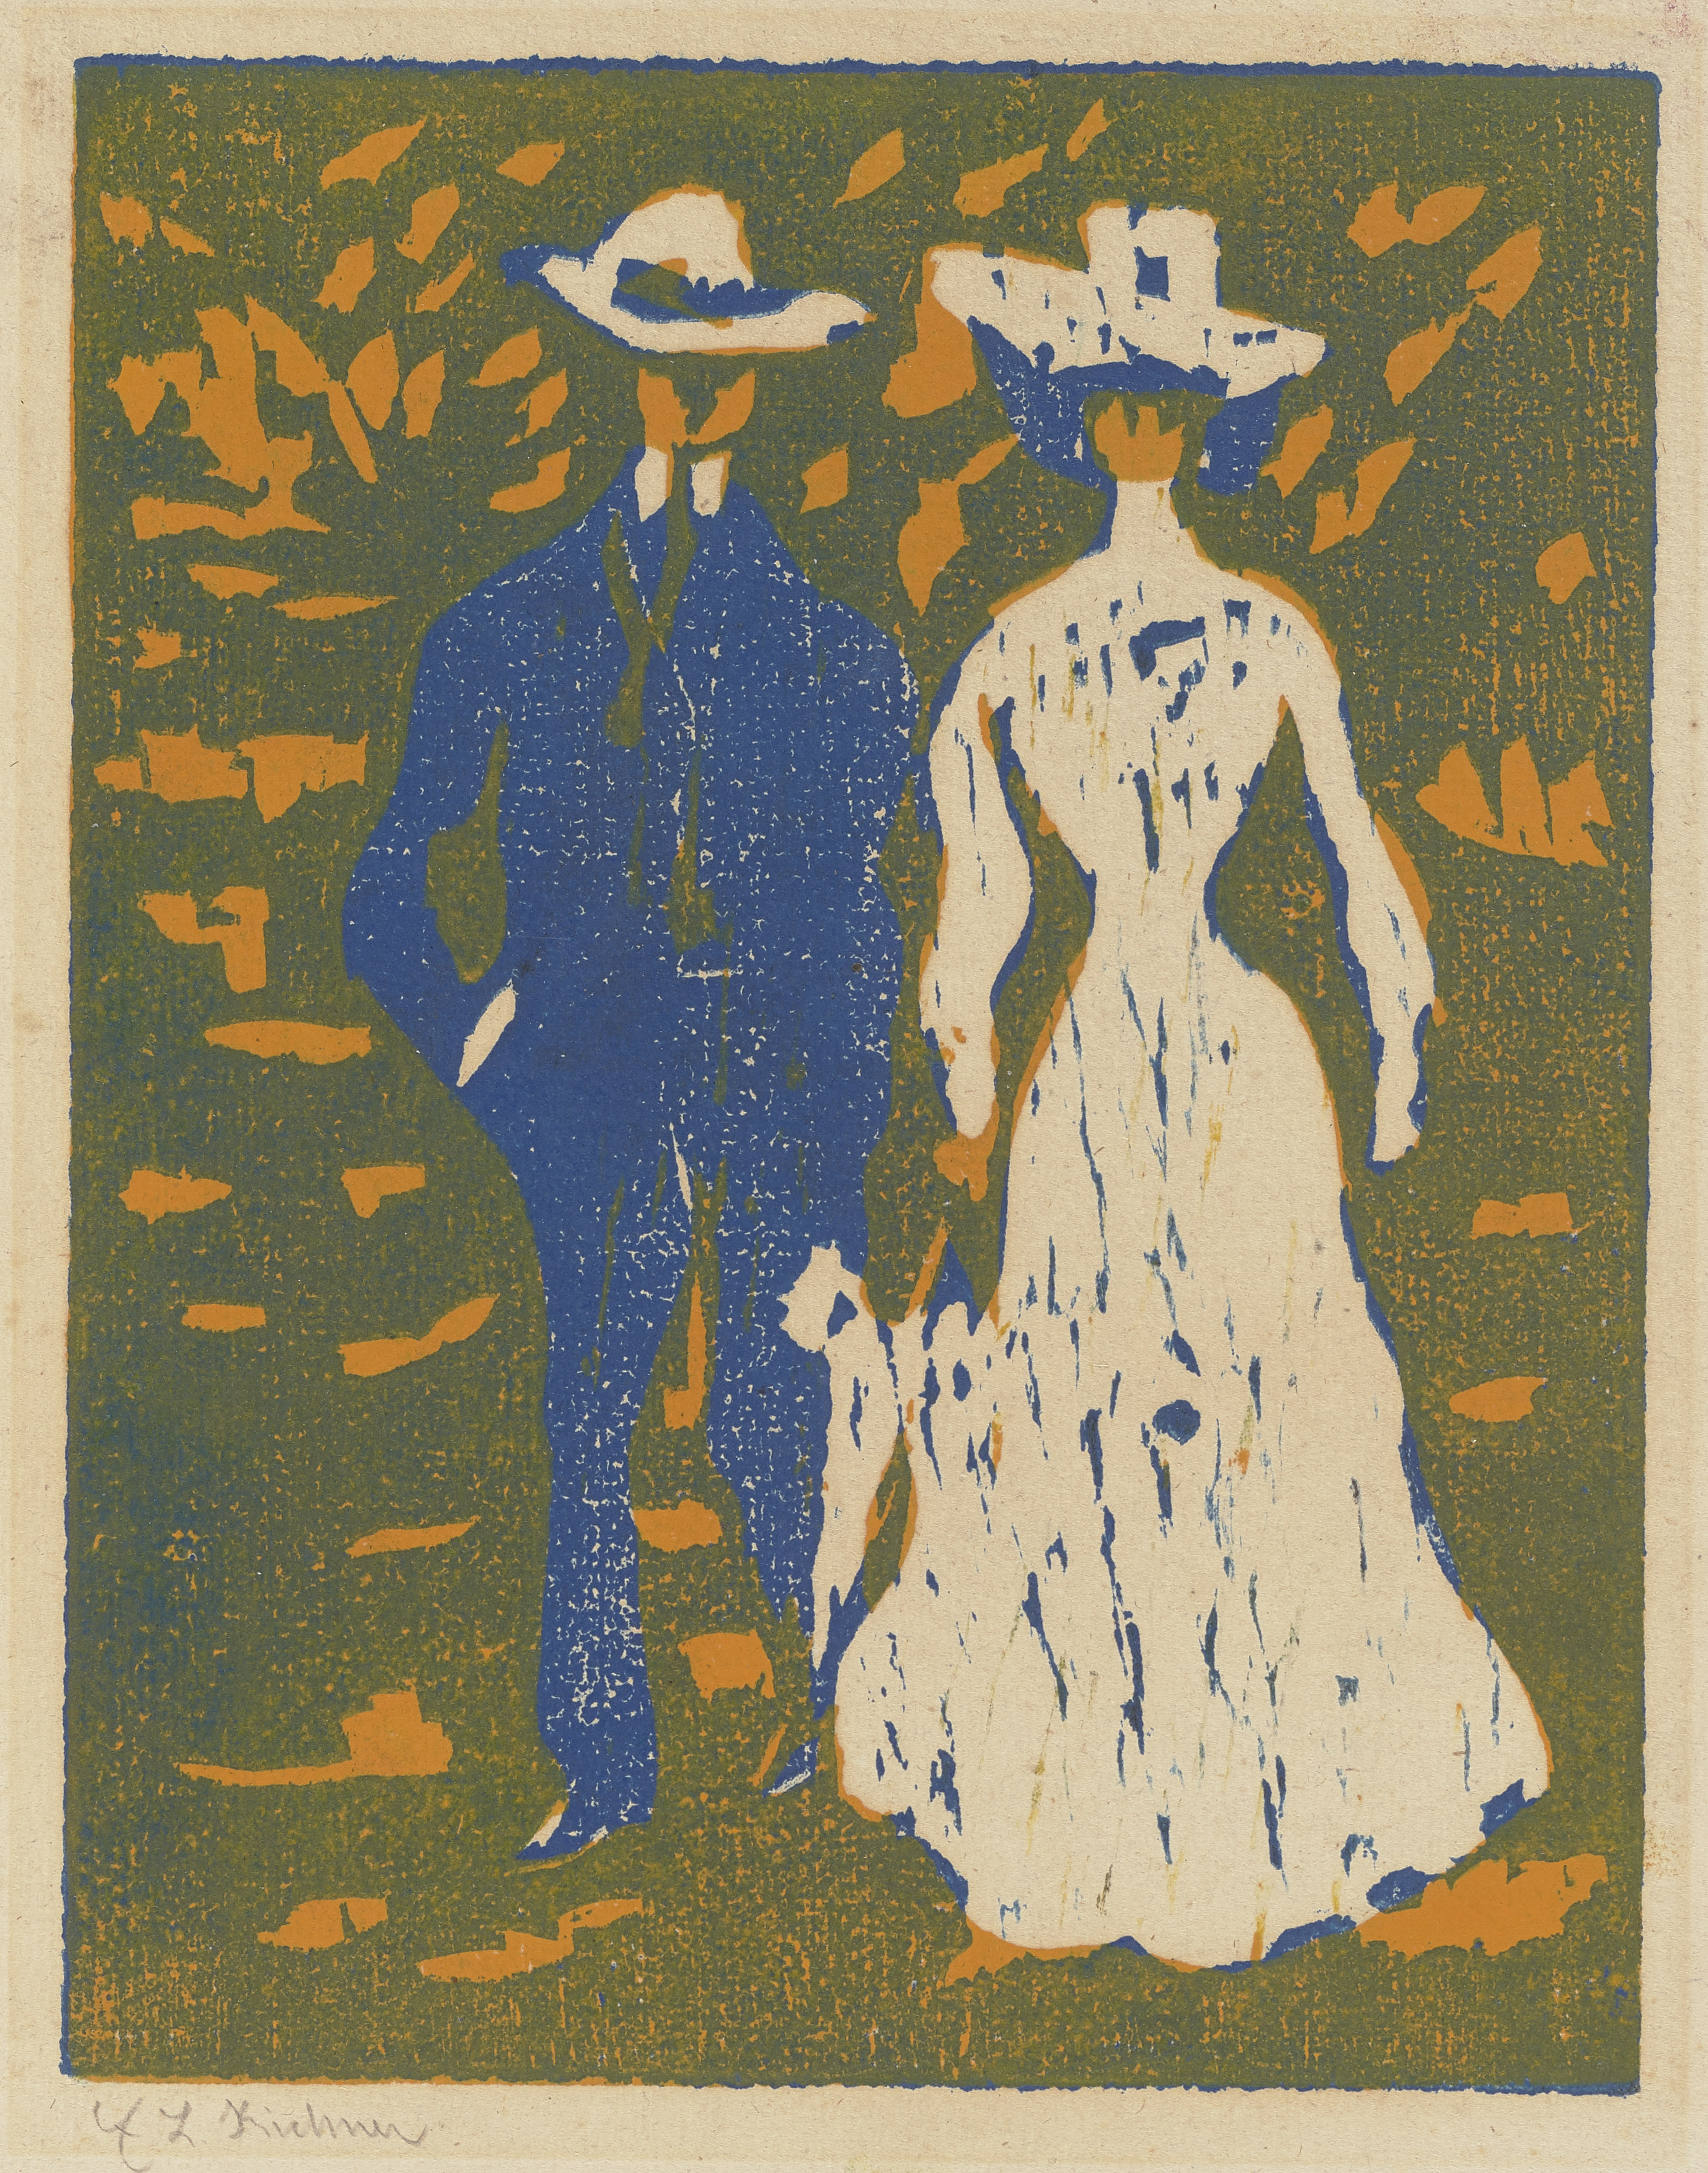 Stelletje aan het wandelen by Ernst Ludwig Kirchner - 1907 Städel Museum